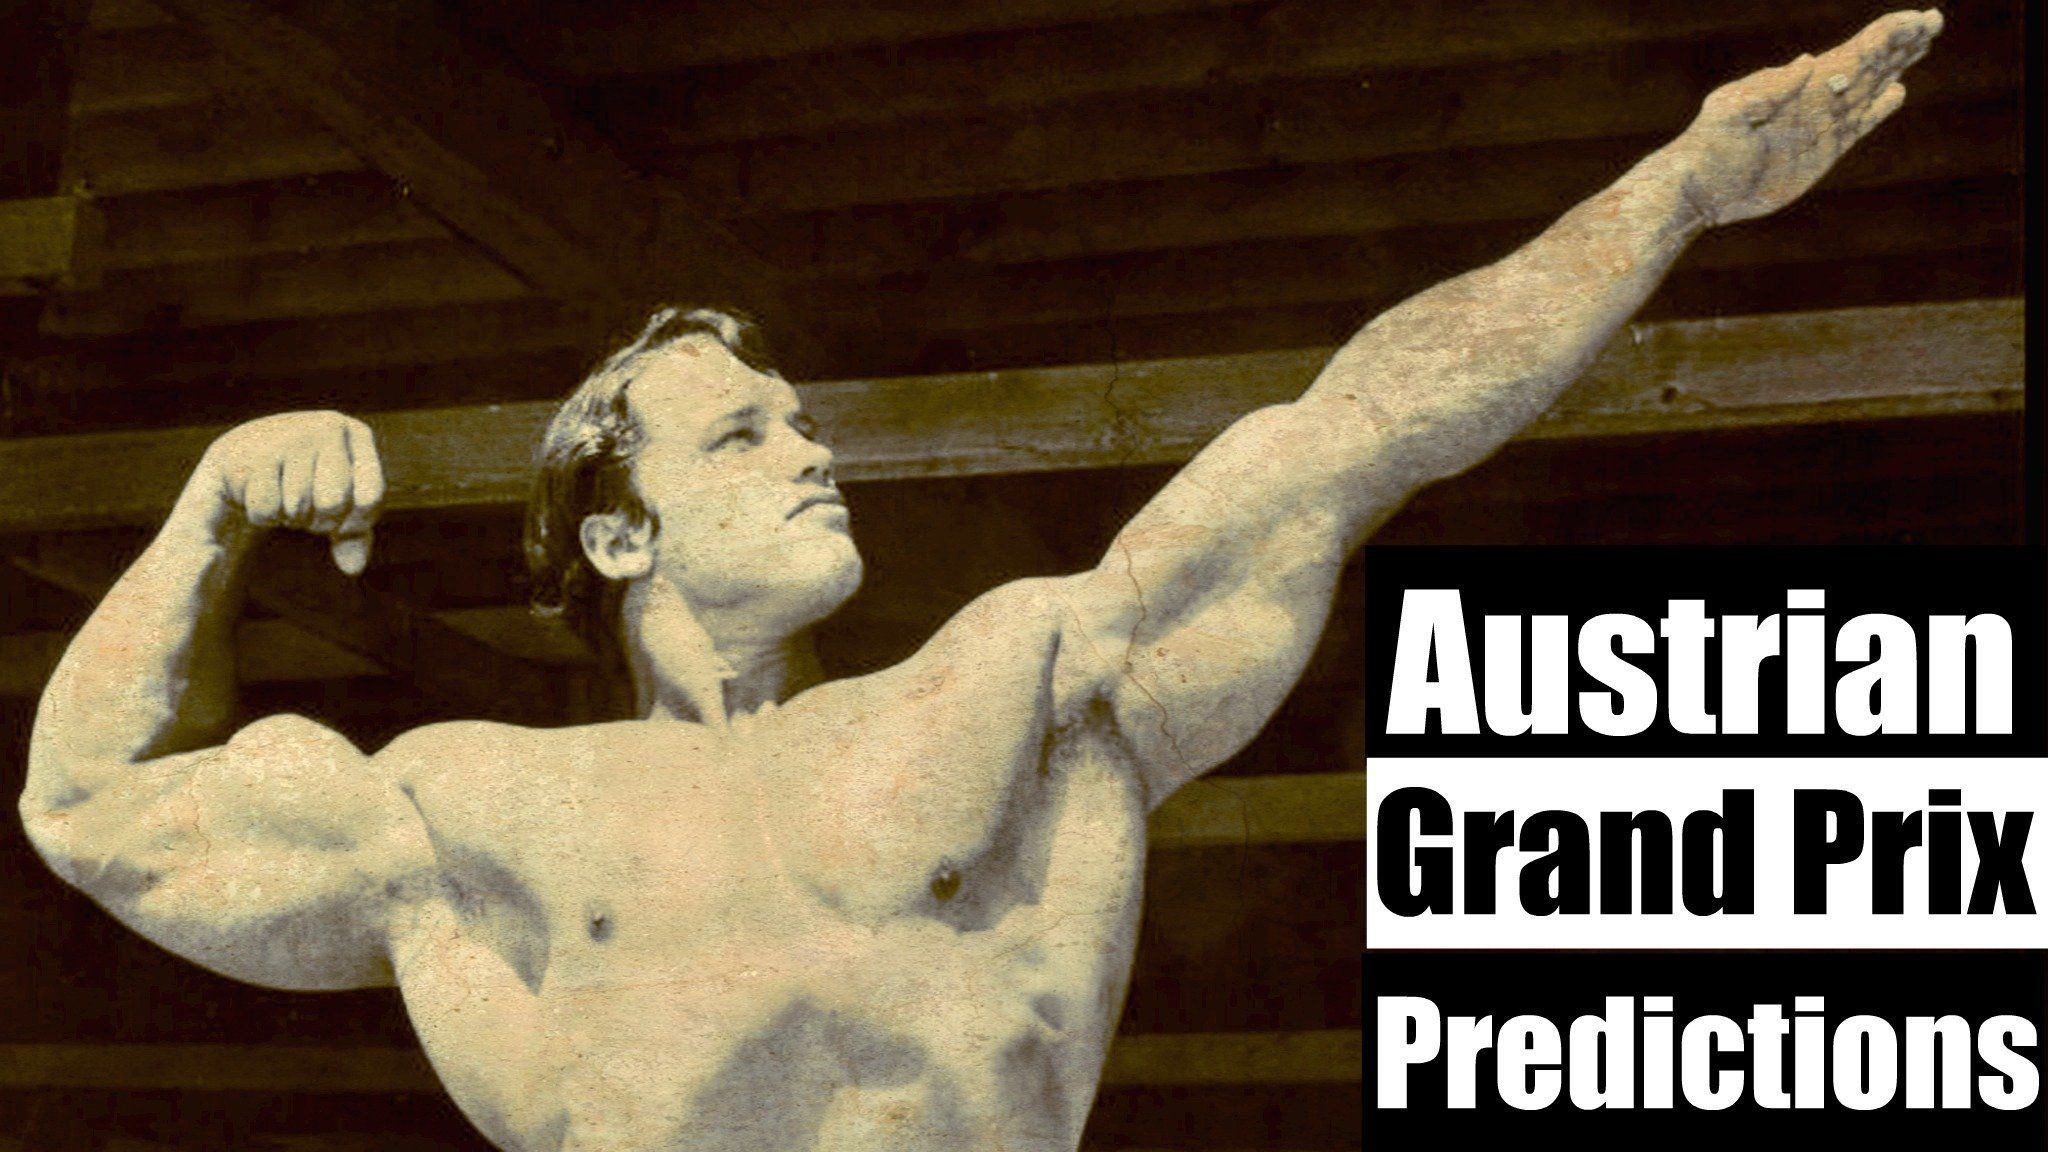 Austrian Grand Prix predictions